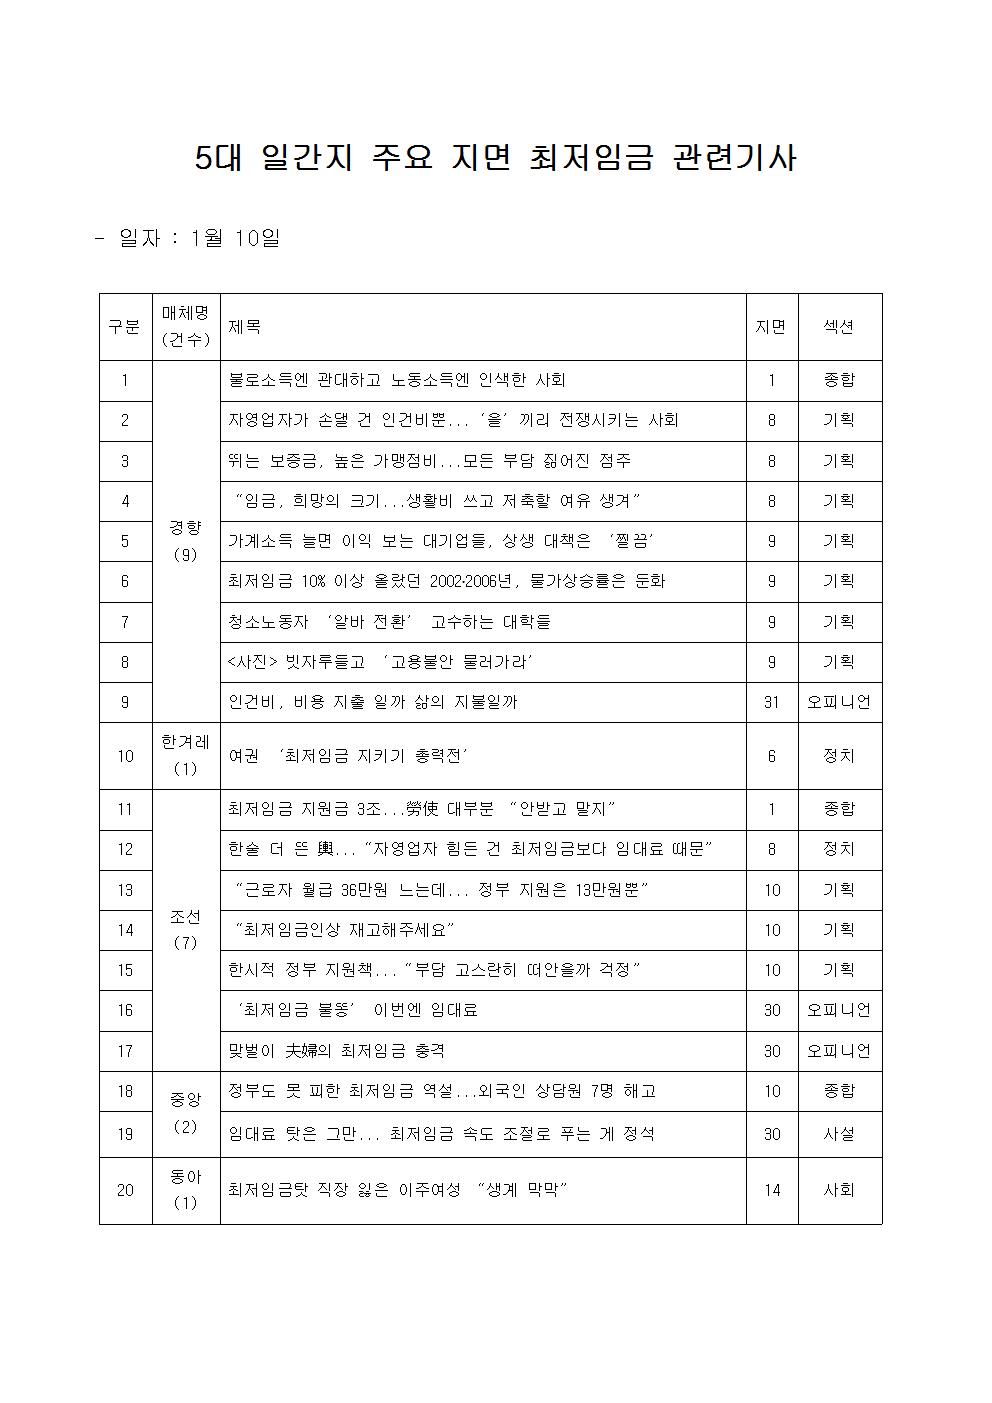 5대 일간지(경향, 동아, 조선, 중앙, 한겨레) 1월 10일자 최저임금 관련 기사 리스트 